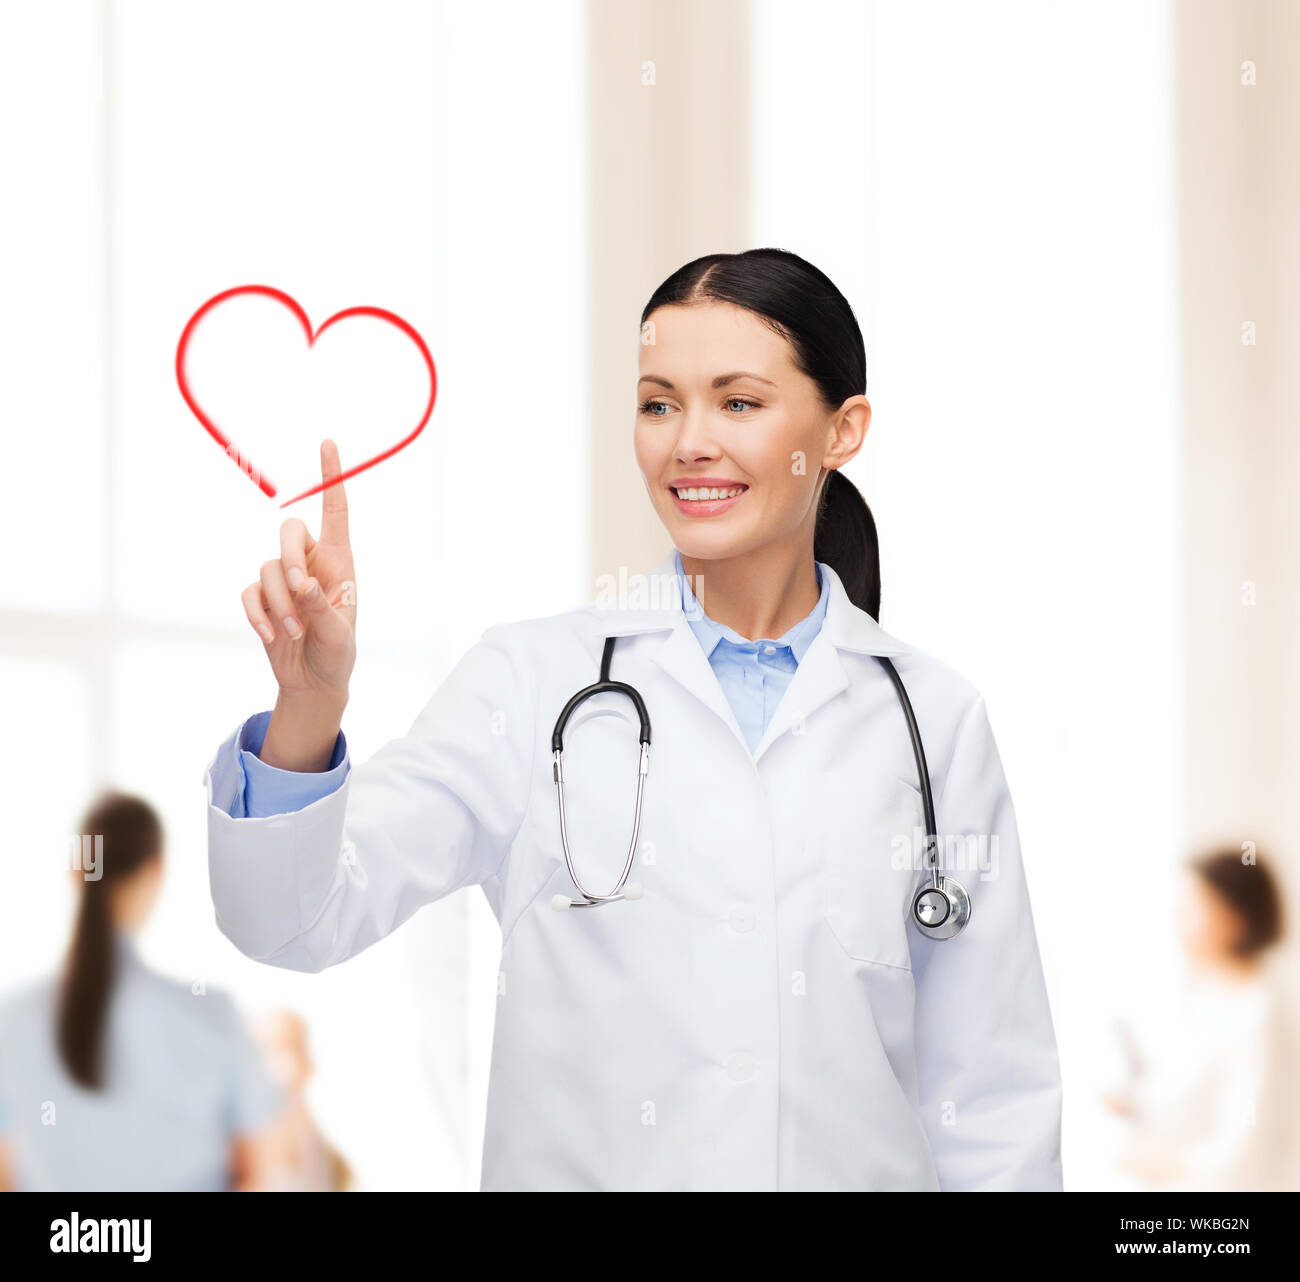 Santé, médecine et technologie concept - smiling doctor pointing to heart Banque D'Images